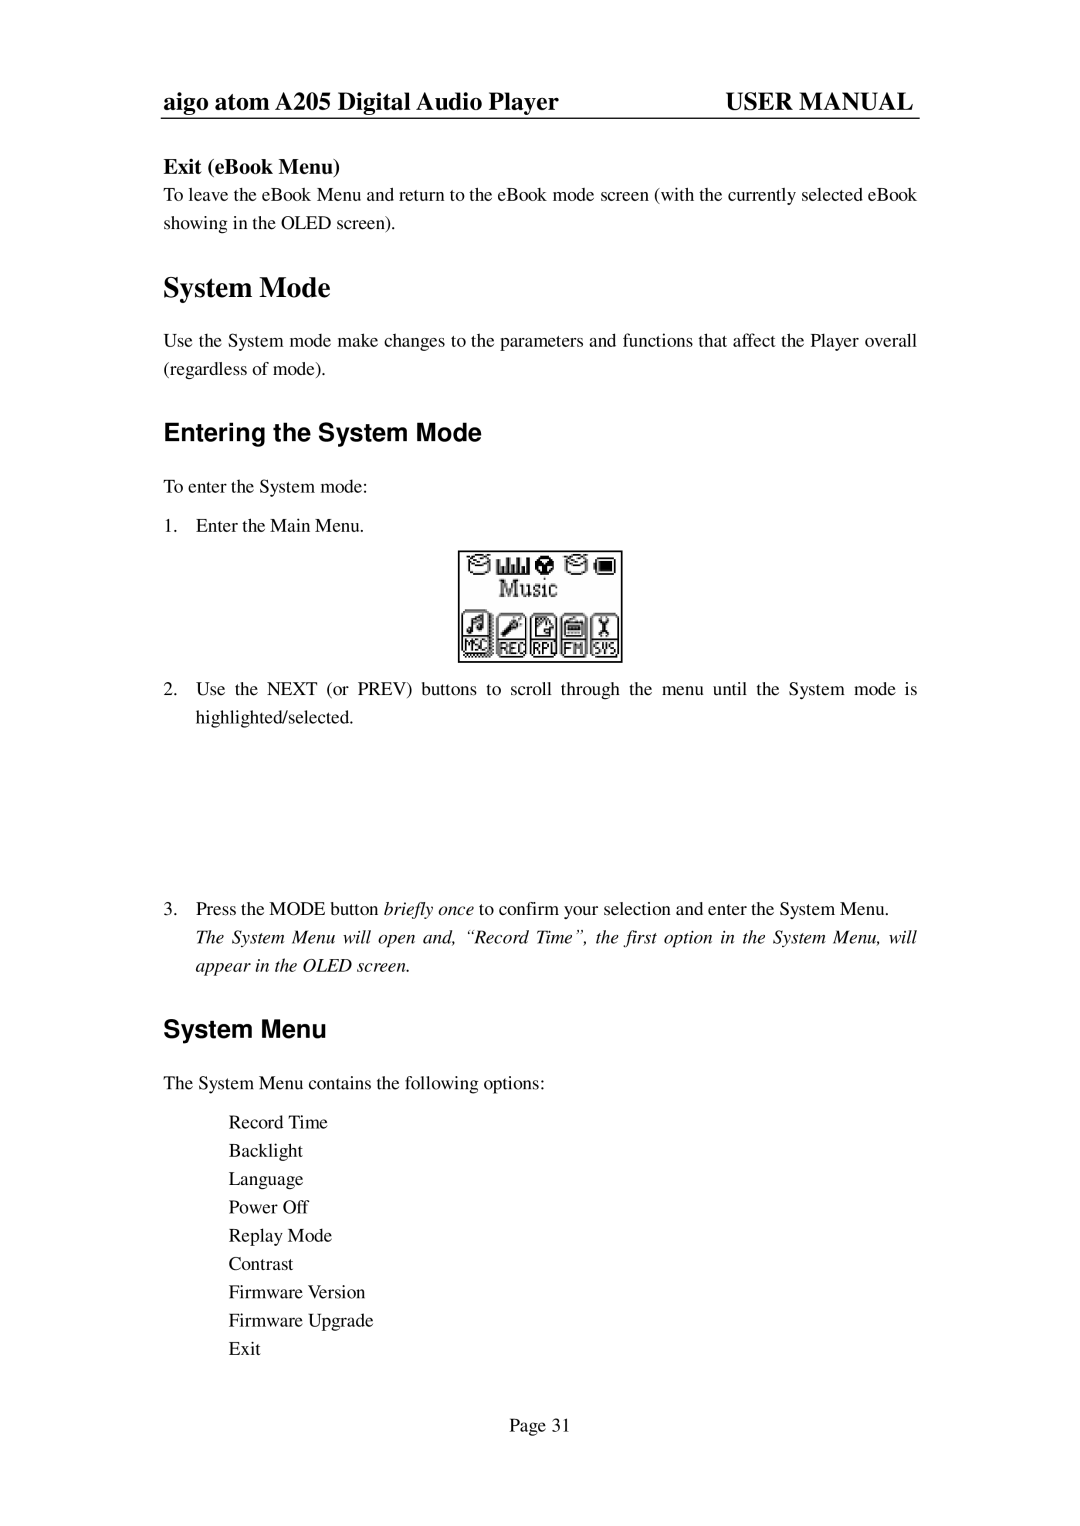 Aigo atom A205 user manual Entering the System Mode, System Menu, Exit eBook Menu 